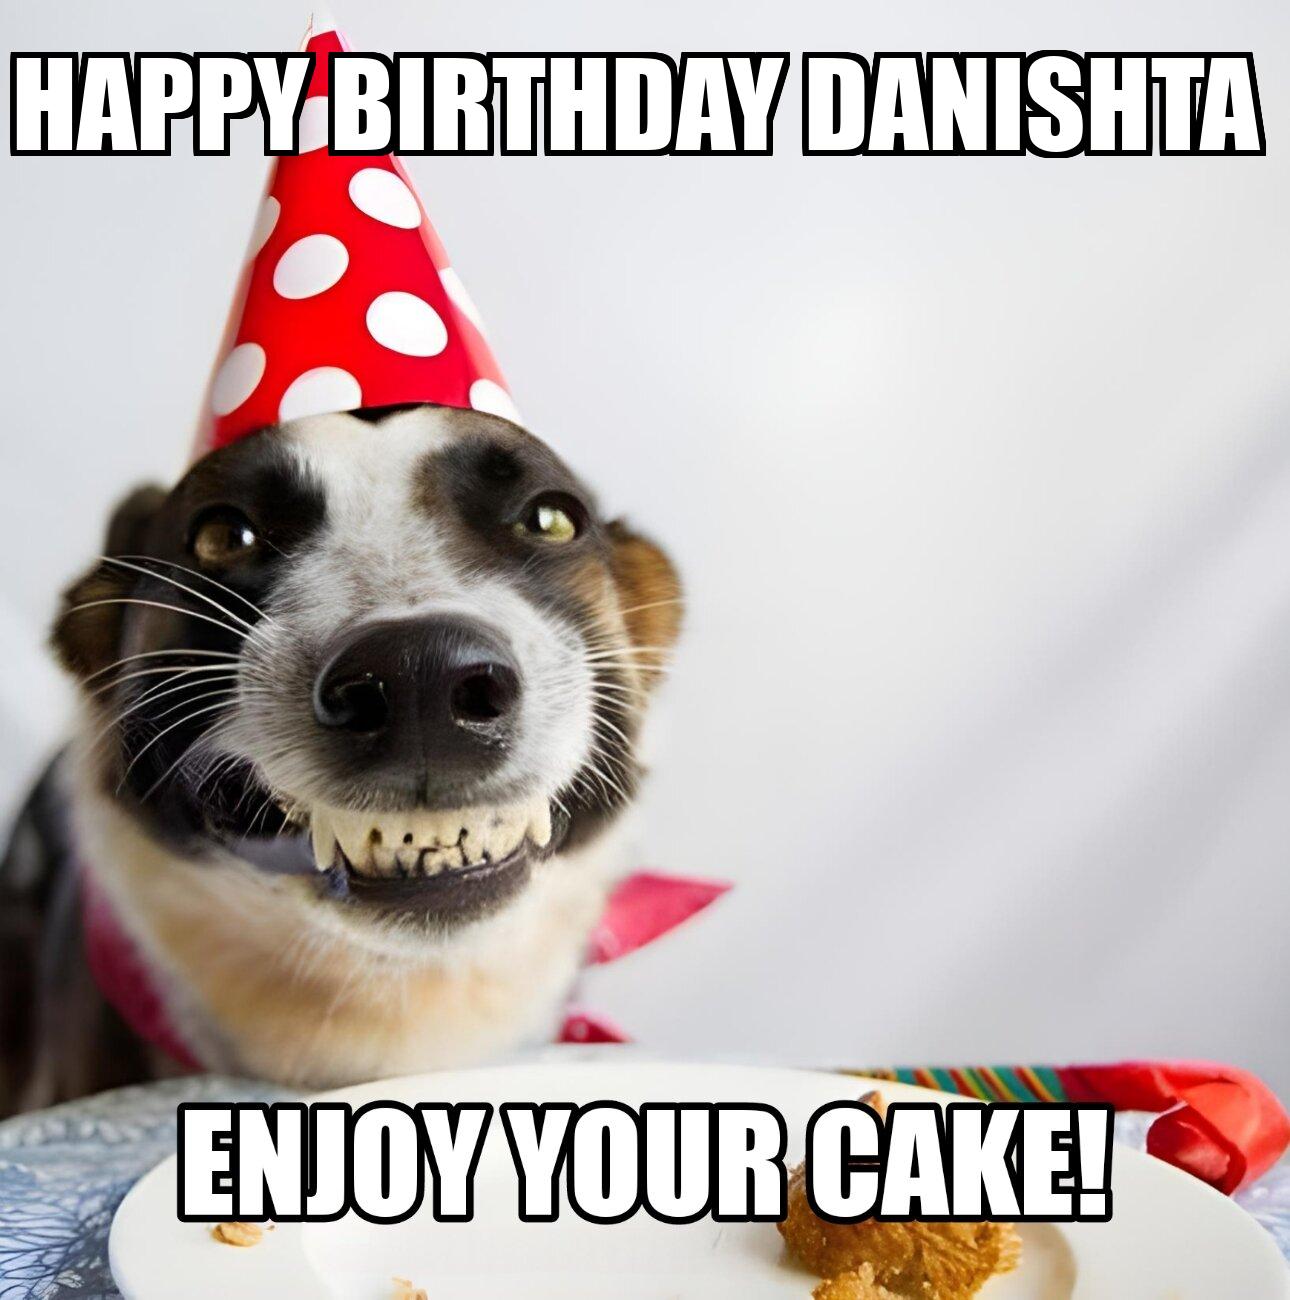 Happy Birthday Danishta Enjoy Your Cake Dog Meme